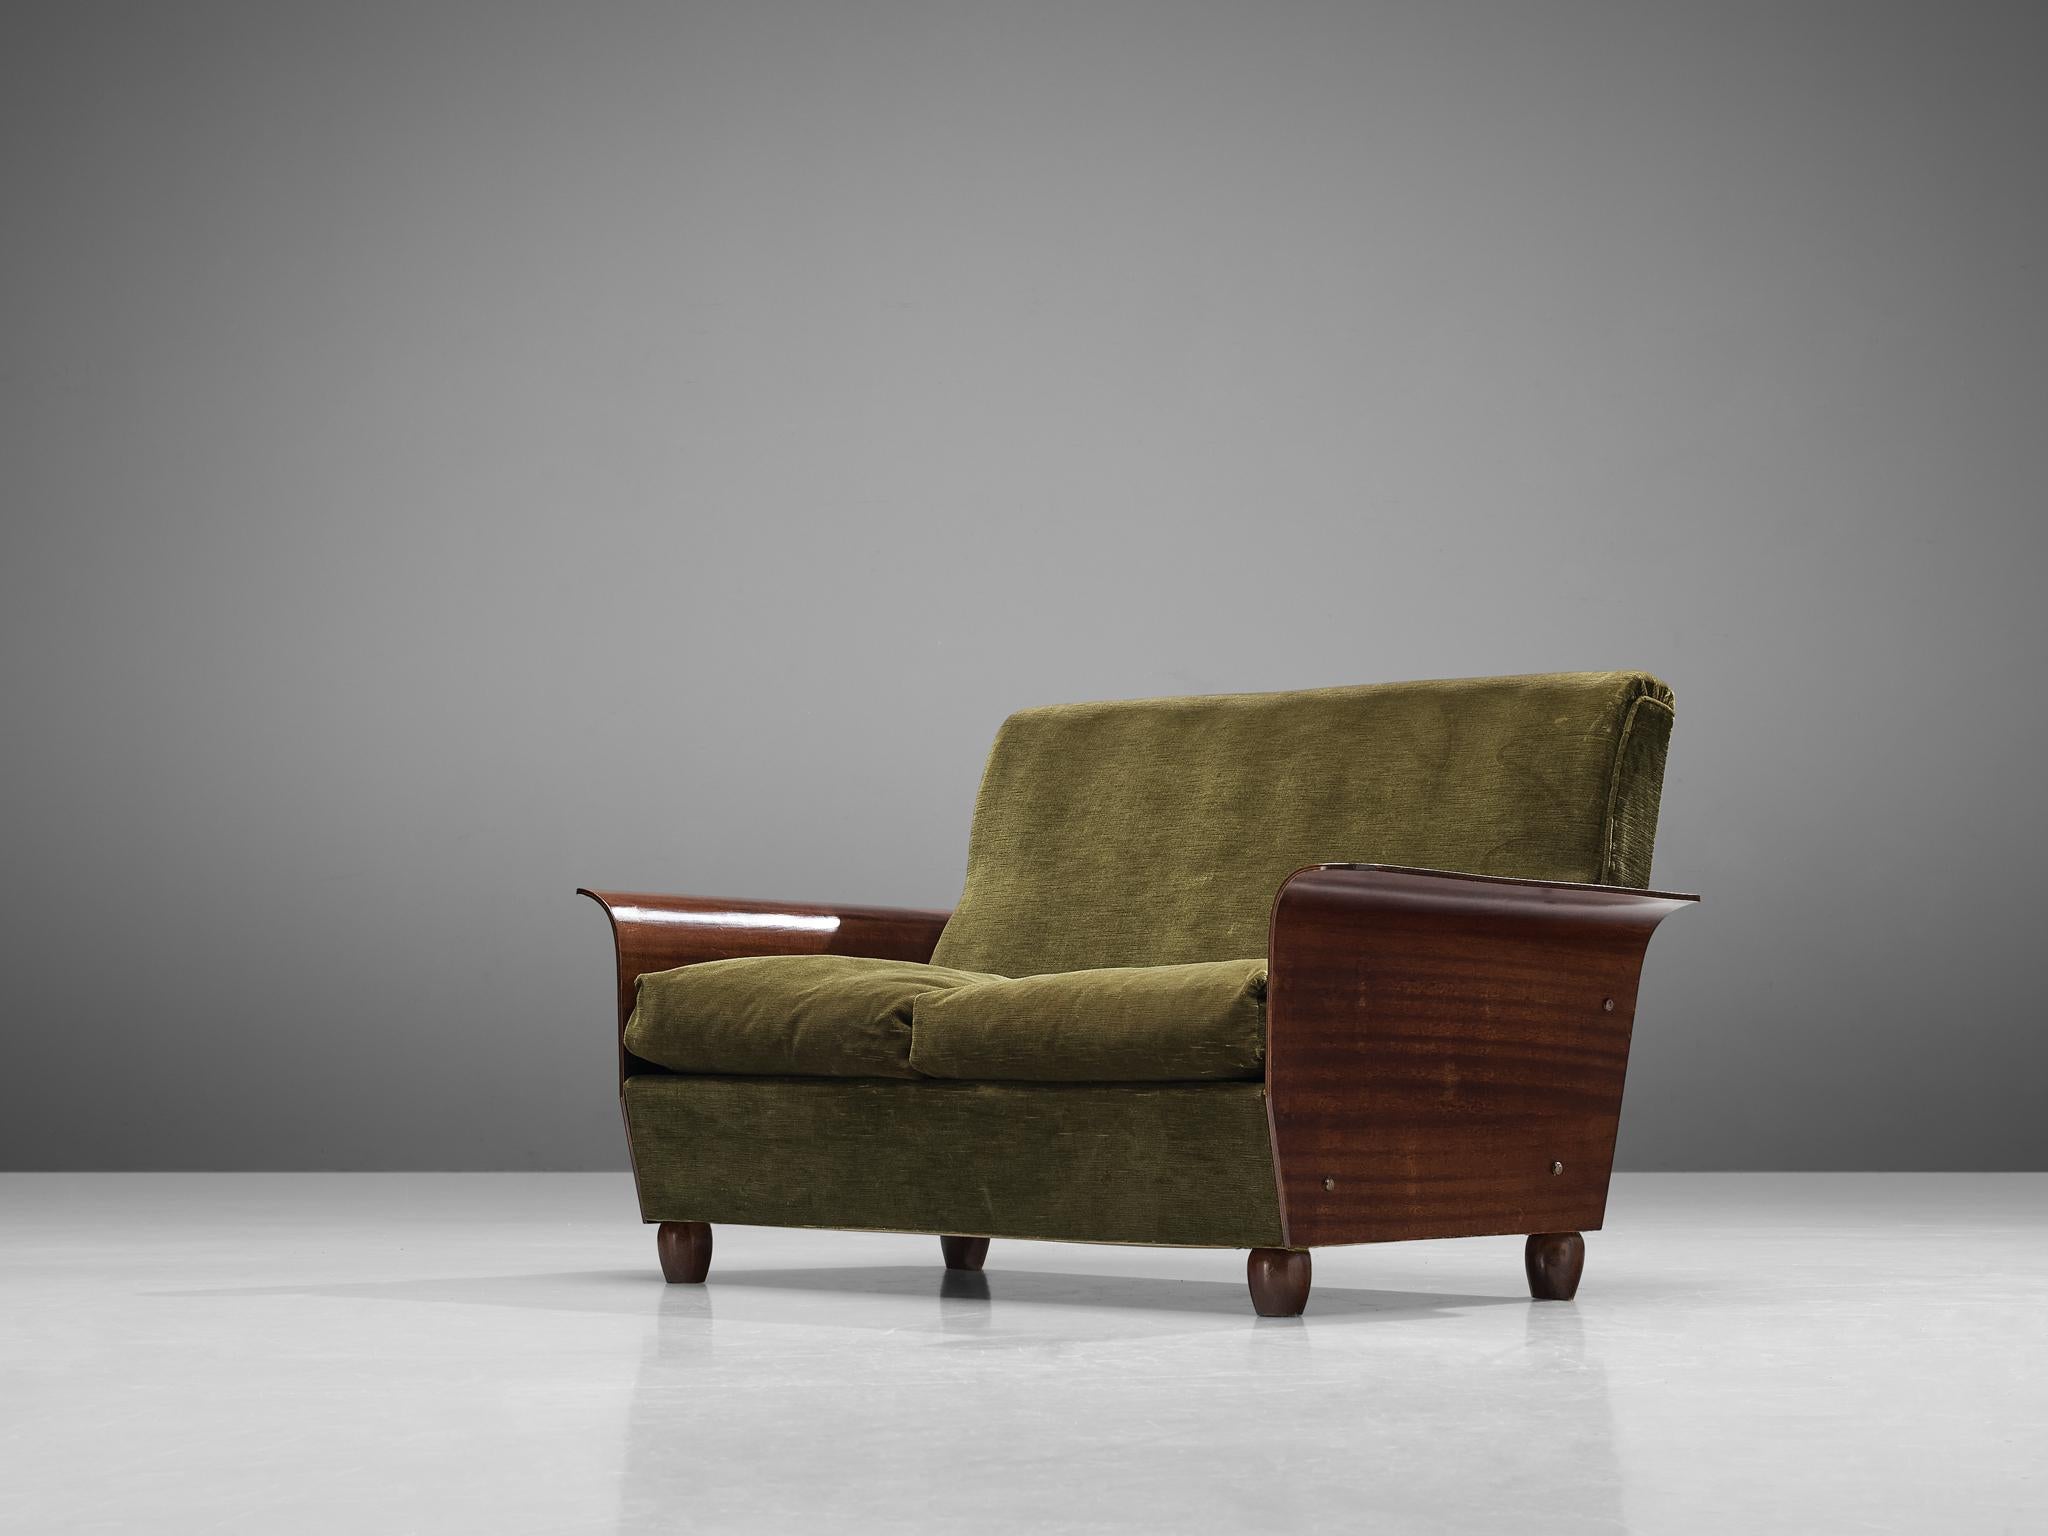 Sofá de dos plazas, tela de terciopelo, caoba, Italia, años 50

Este hermoso sofá de origen italiano viene con una expresiva tapicería de color verde bosque que resulta agradable a la vista. Este mueble en concreto está diseñado para proporcionar un